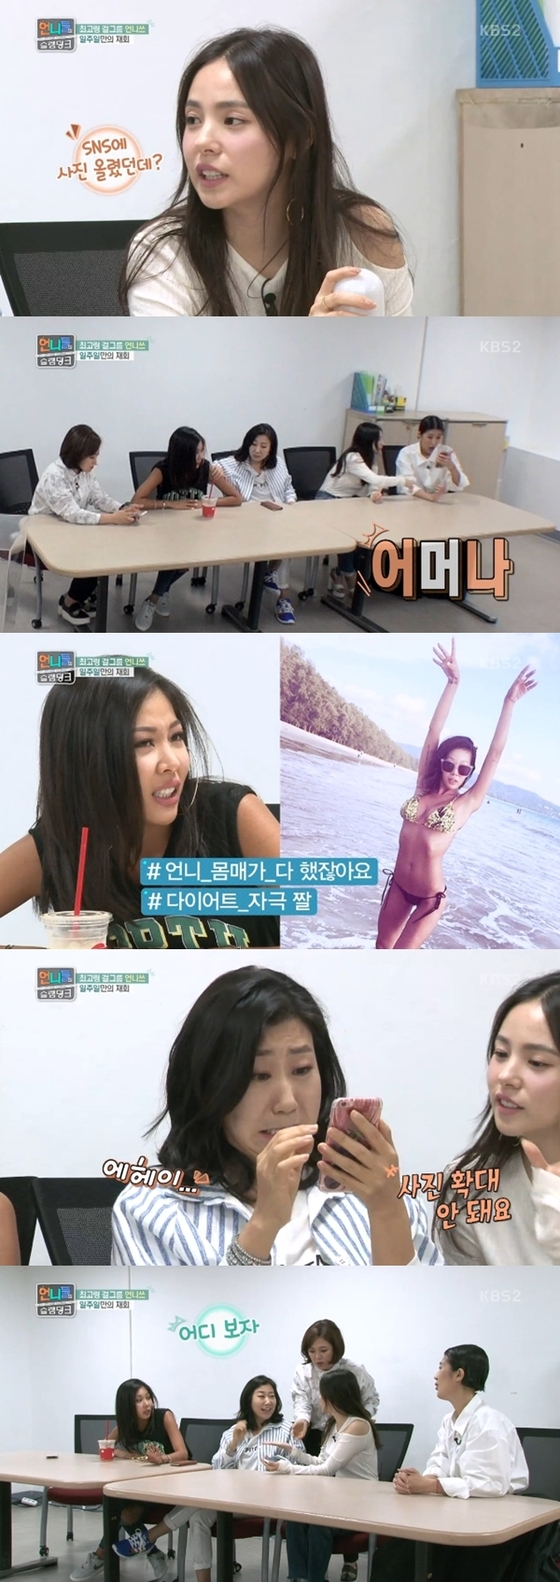 제시의 비키니 사진이 공개됐다. © News1star/ KBS2 '언니들의 슬램덩크' 캡처